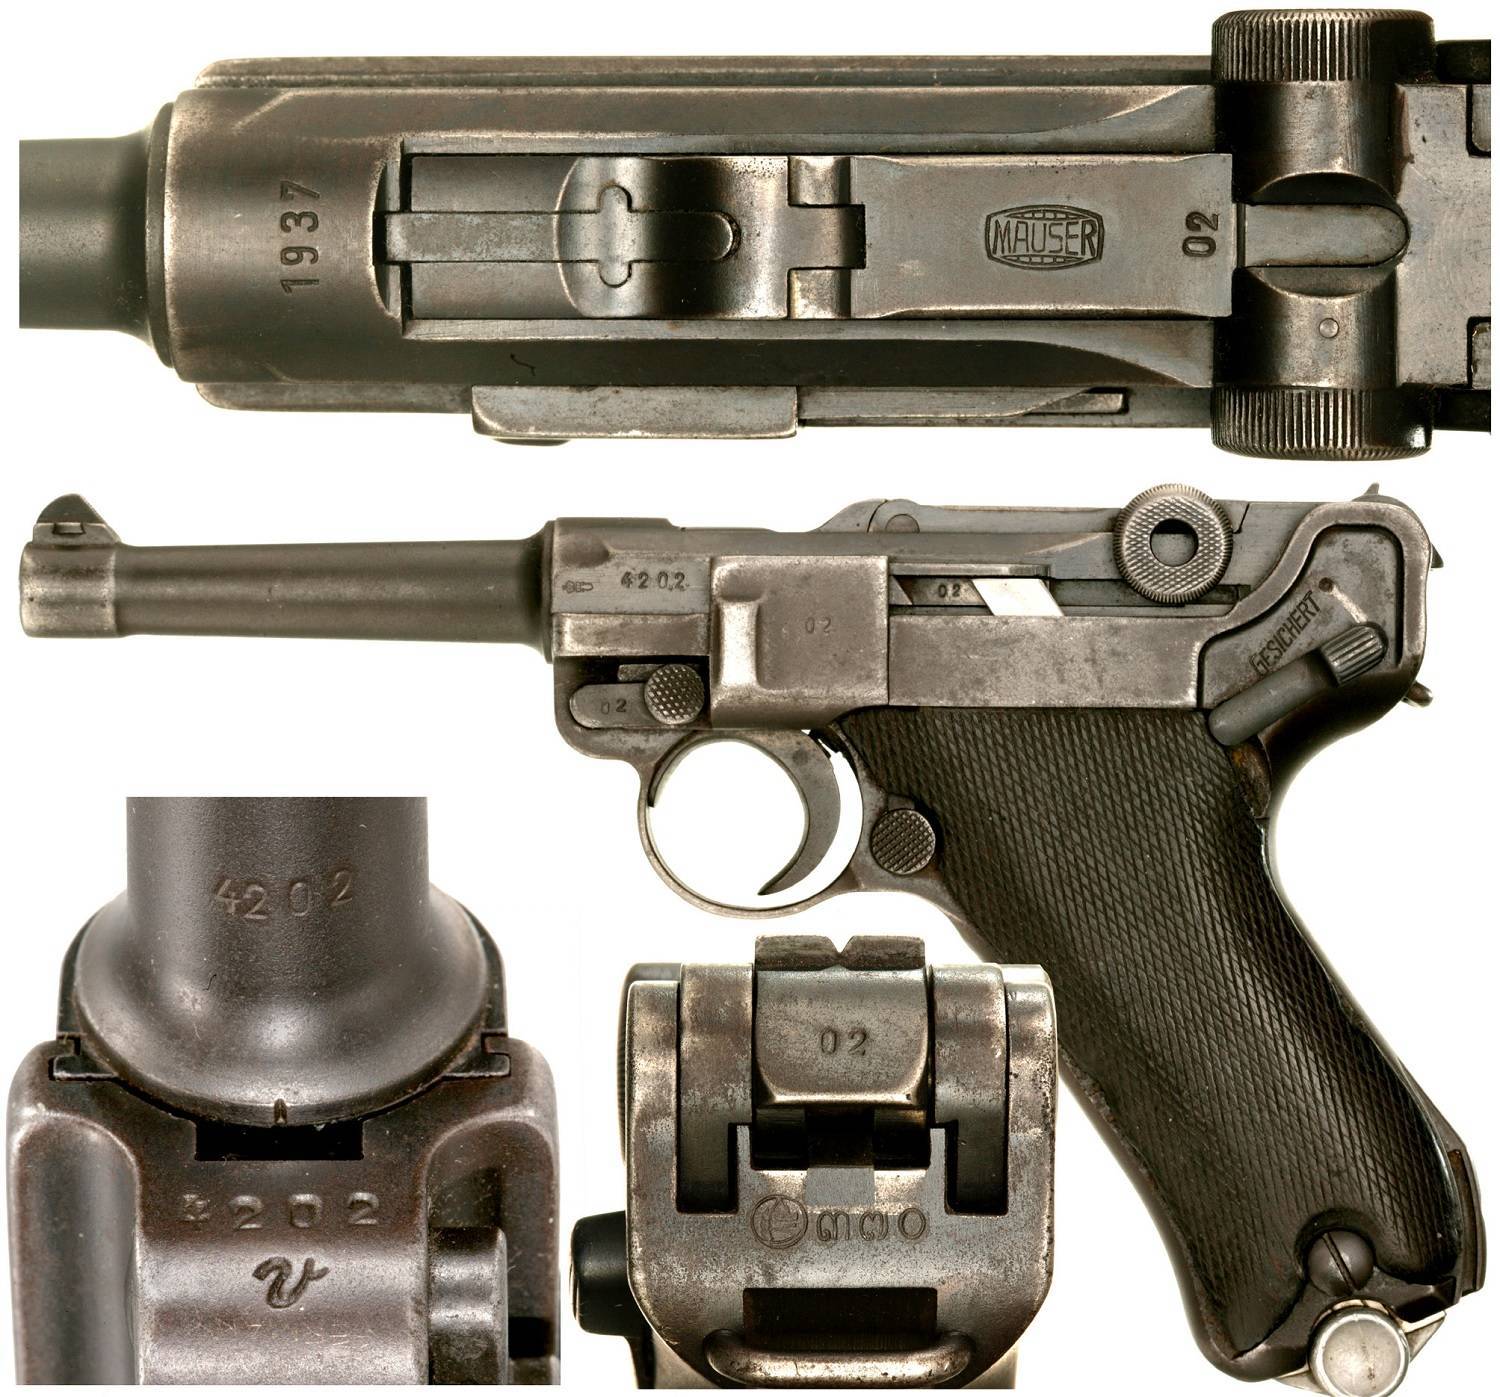 «парабеллум» – пистолет, который за 100 лет использования практически ни разу не дорабатывался